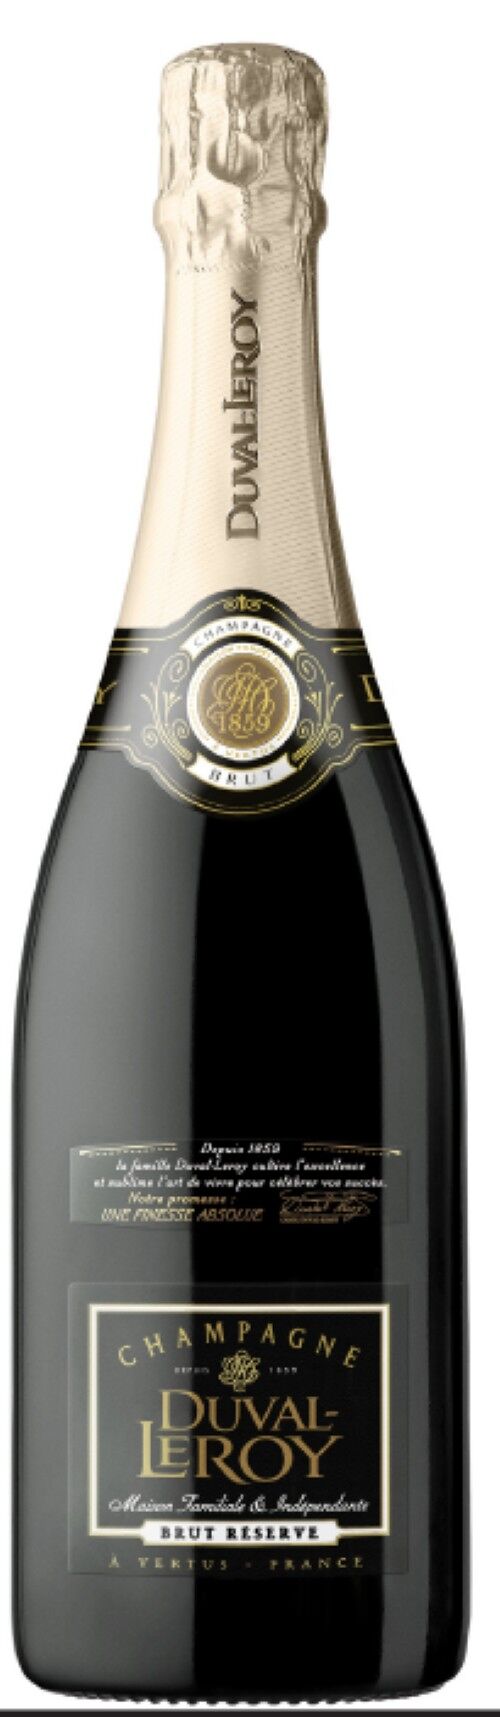 Brut Réserve - Non millésimé - Effervescent - 75cl - Champagne Duval-Leroy - Champagne AOC